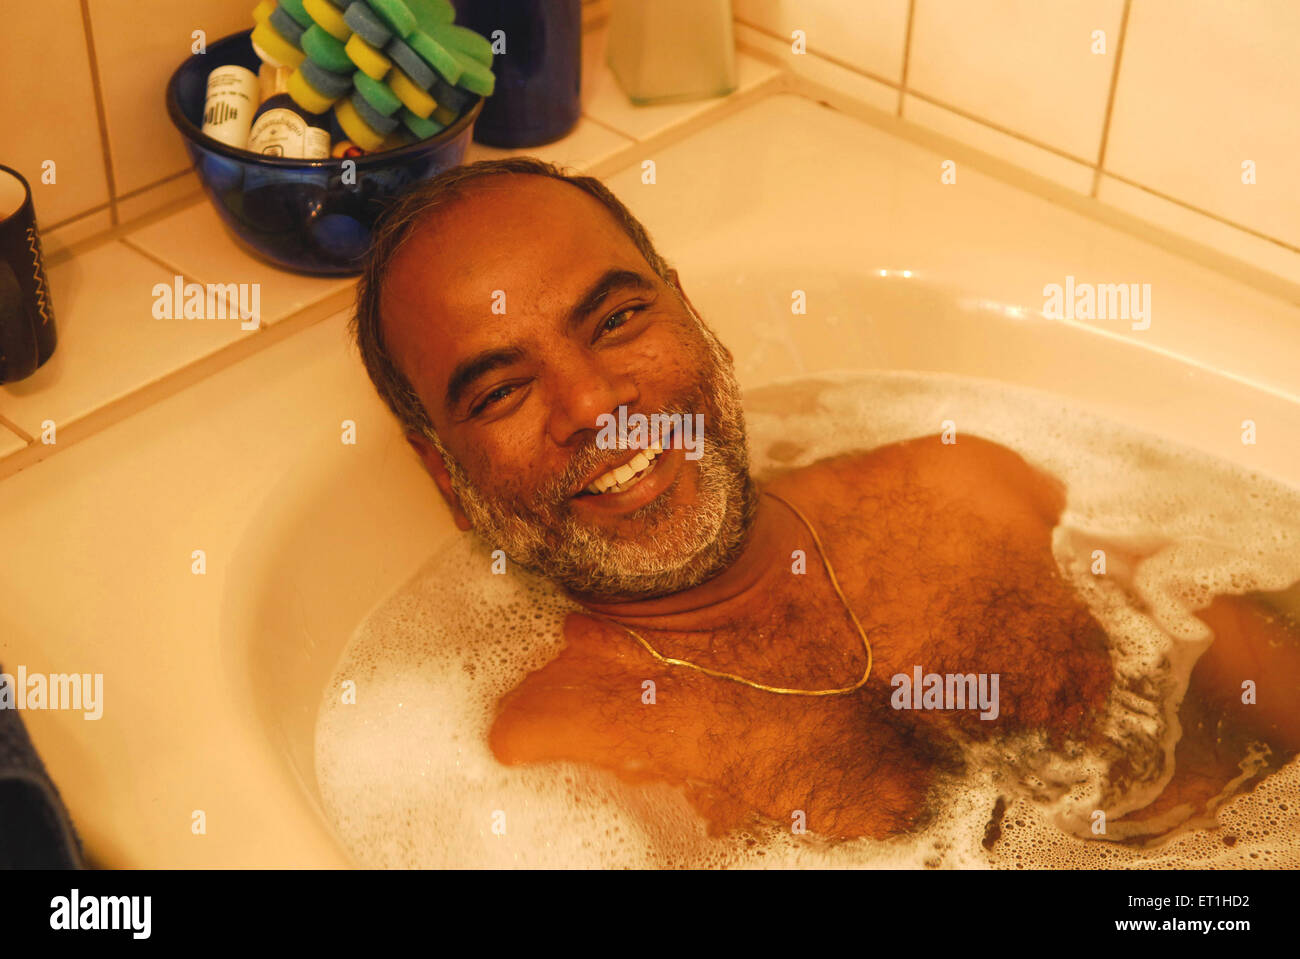 Sudharak Olwe Fotograf in der Badewanne, Indien HERR#400 Stockfoto